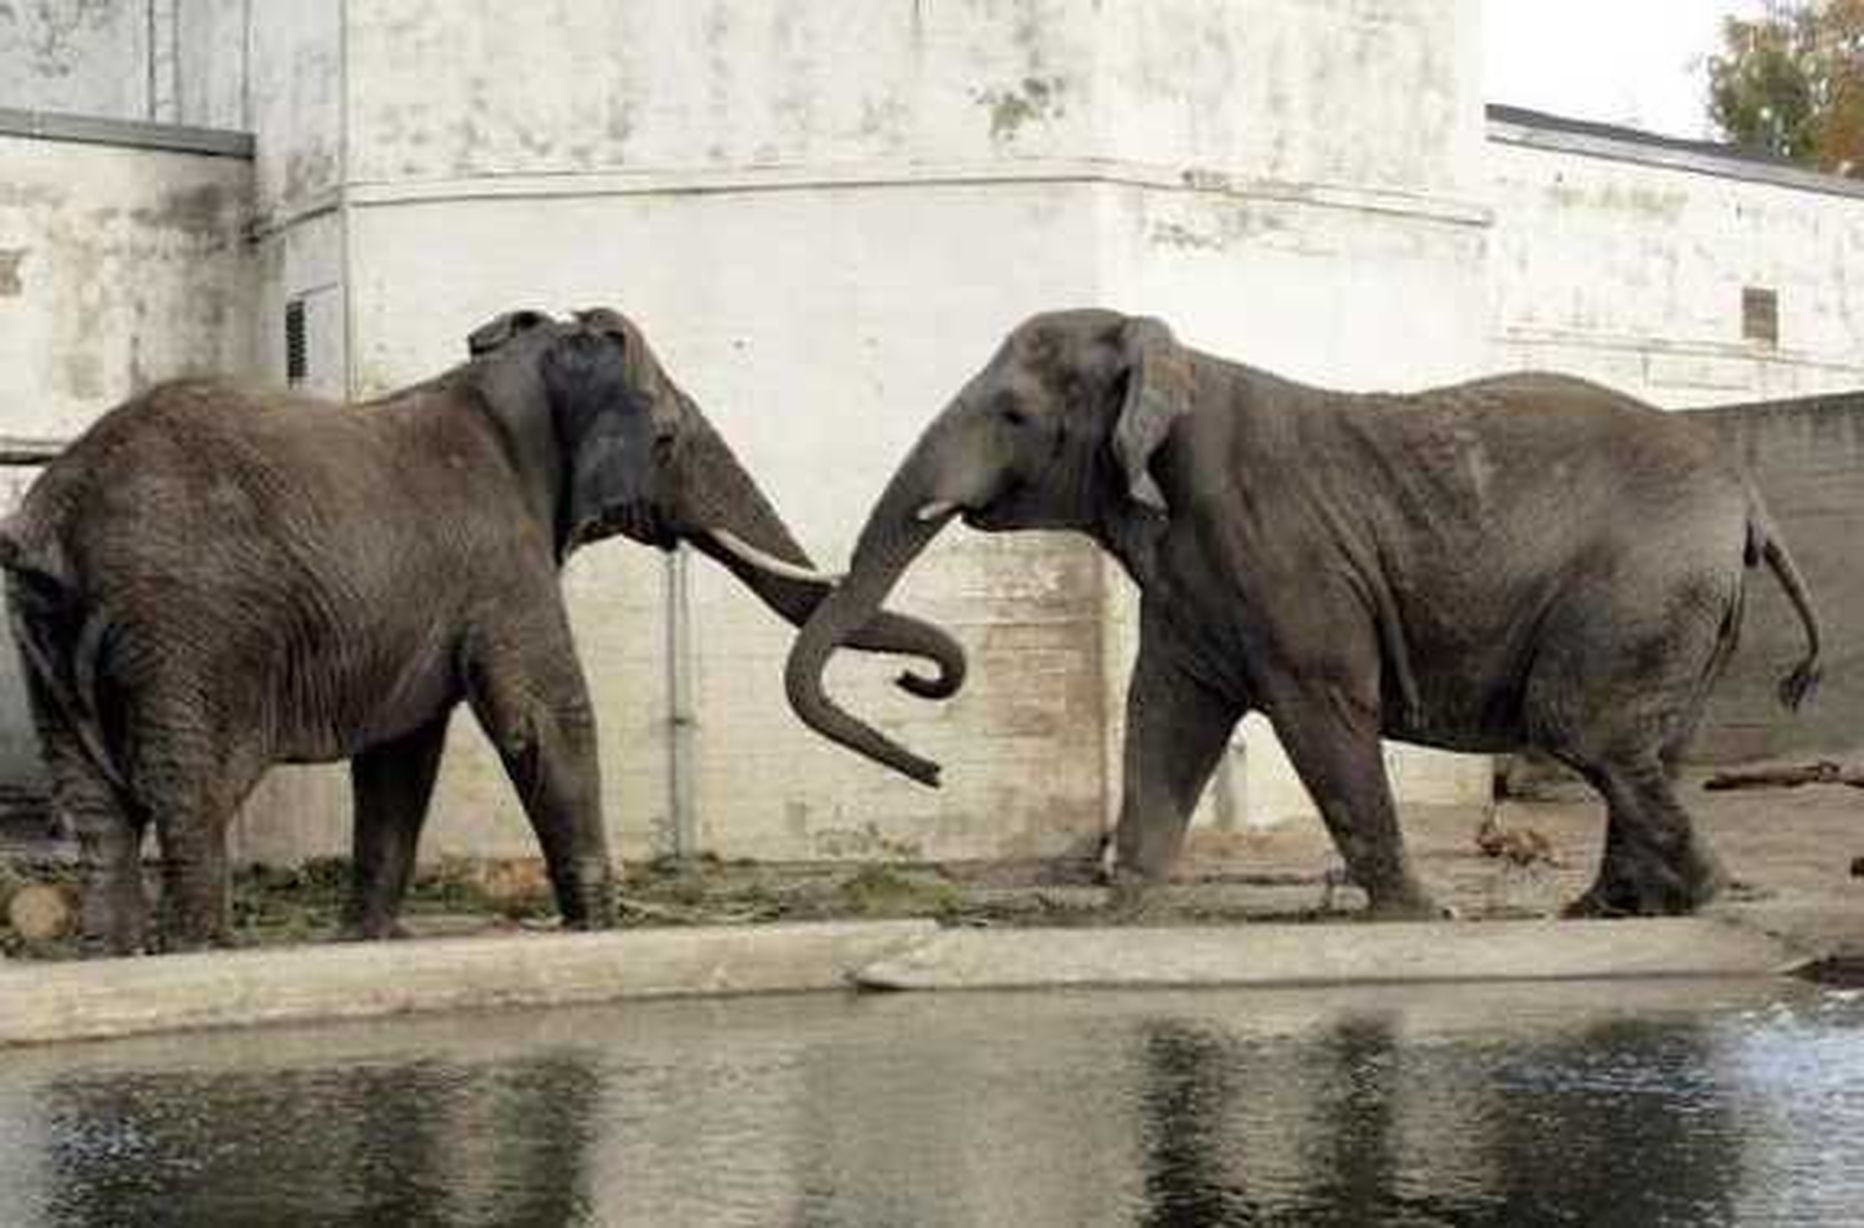 Pildil elevandid Tallinna loomaaias.